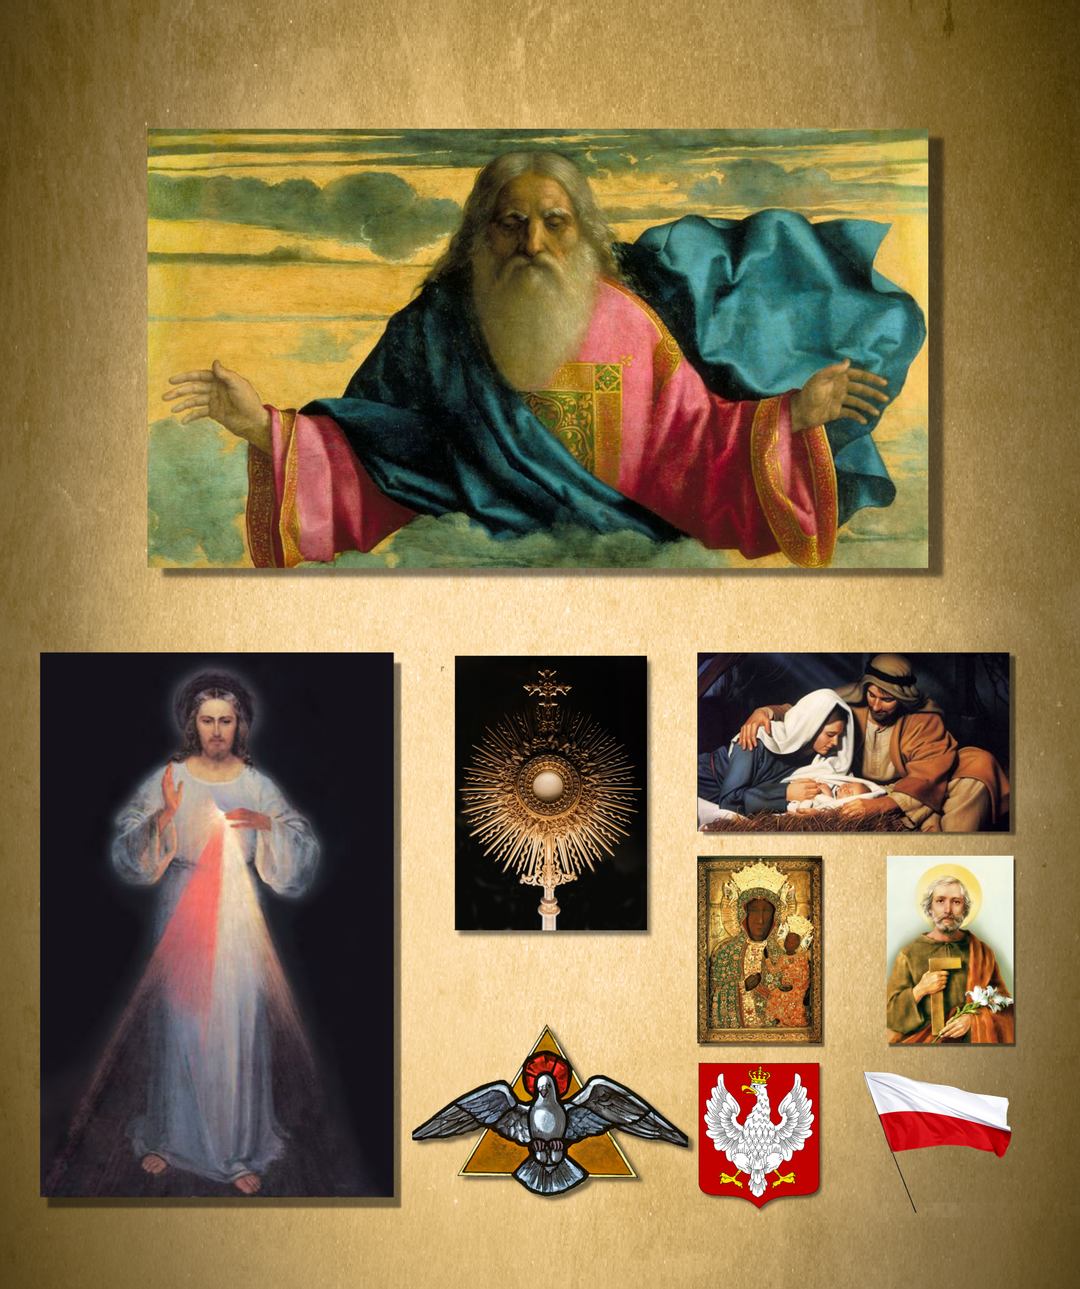 Pan Bóg Stworzyciel, Pan Jezus Miłosierny, Pan Jezus w Hostii Przenajświętszej Ukryty, Matka Boża Królowa Polski